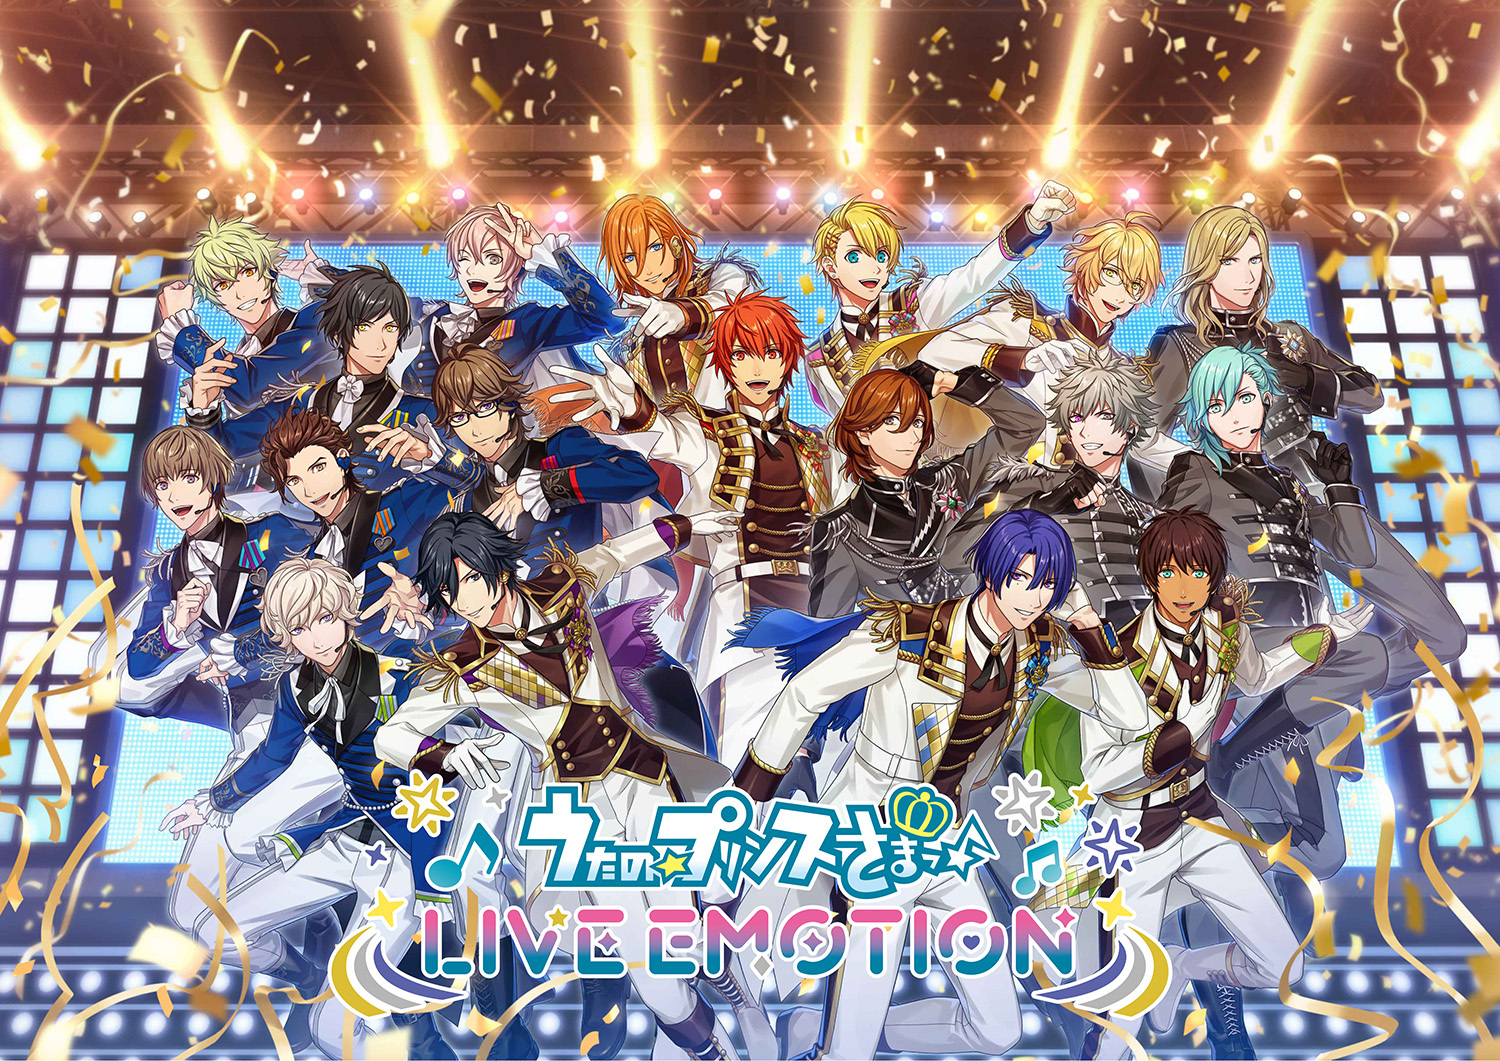 系列全新手机游戏《歌之☆王子殿下♪LIVEEMOTION》预计年内推出公开主题曲CD情报